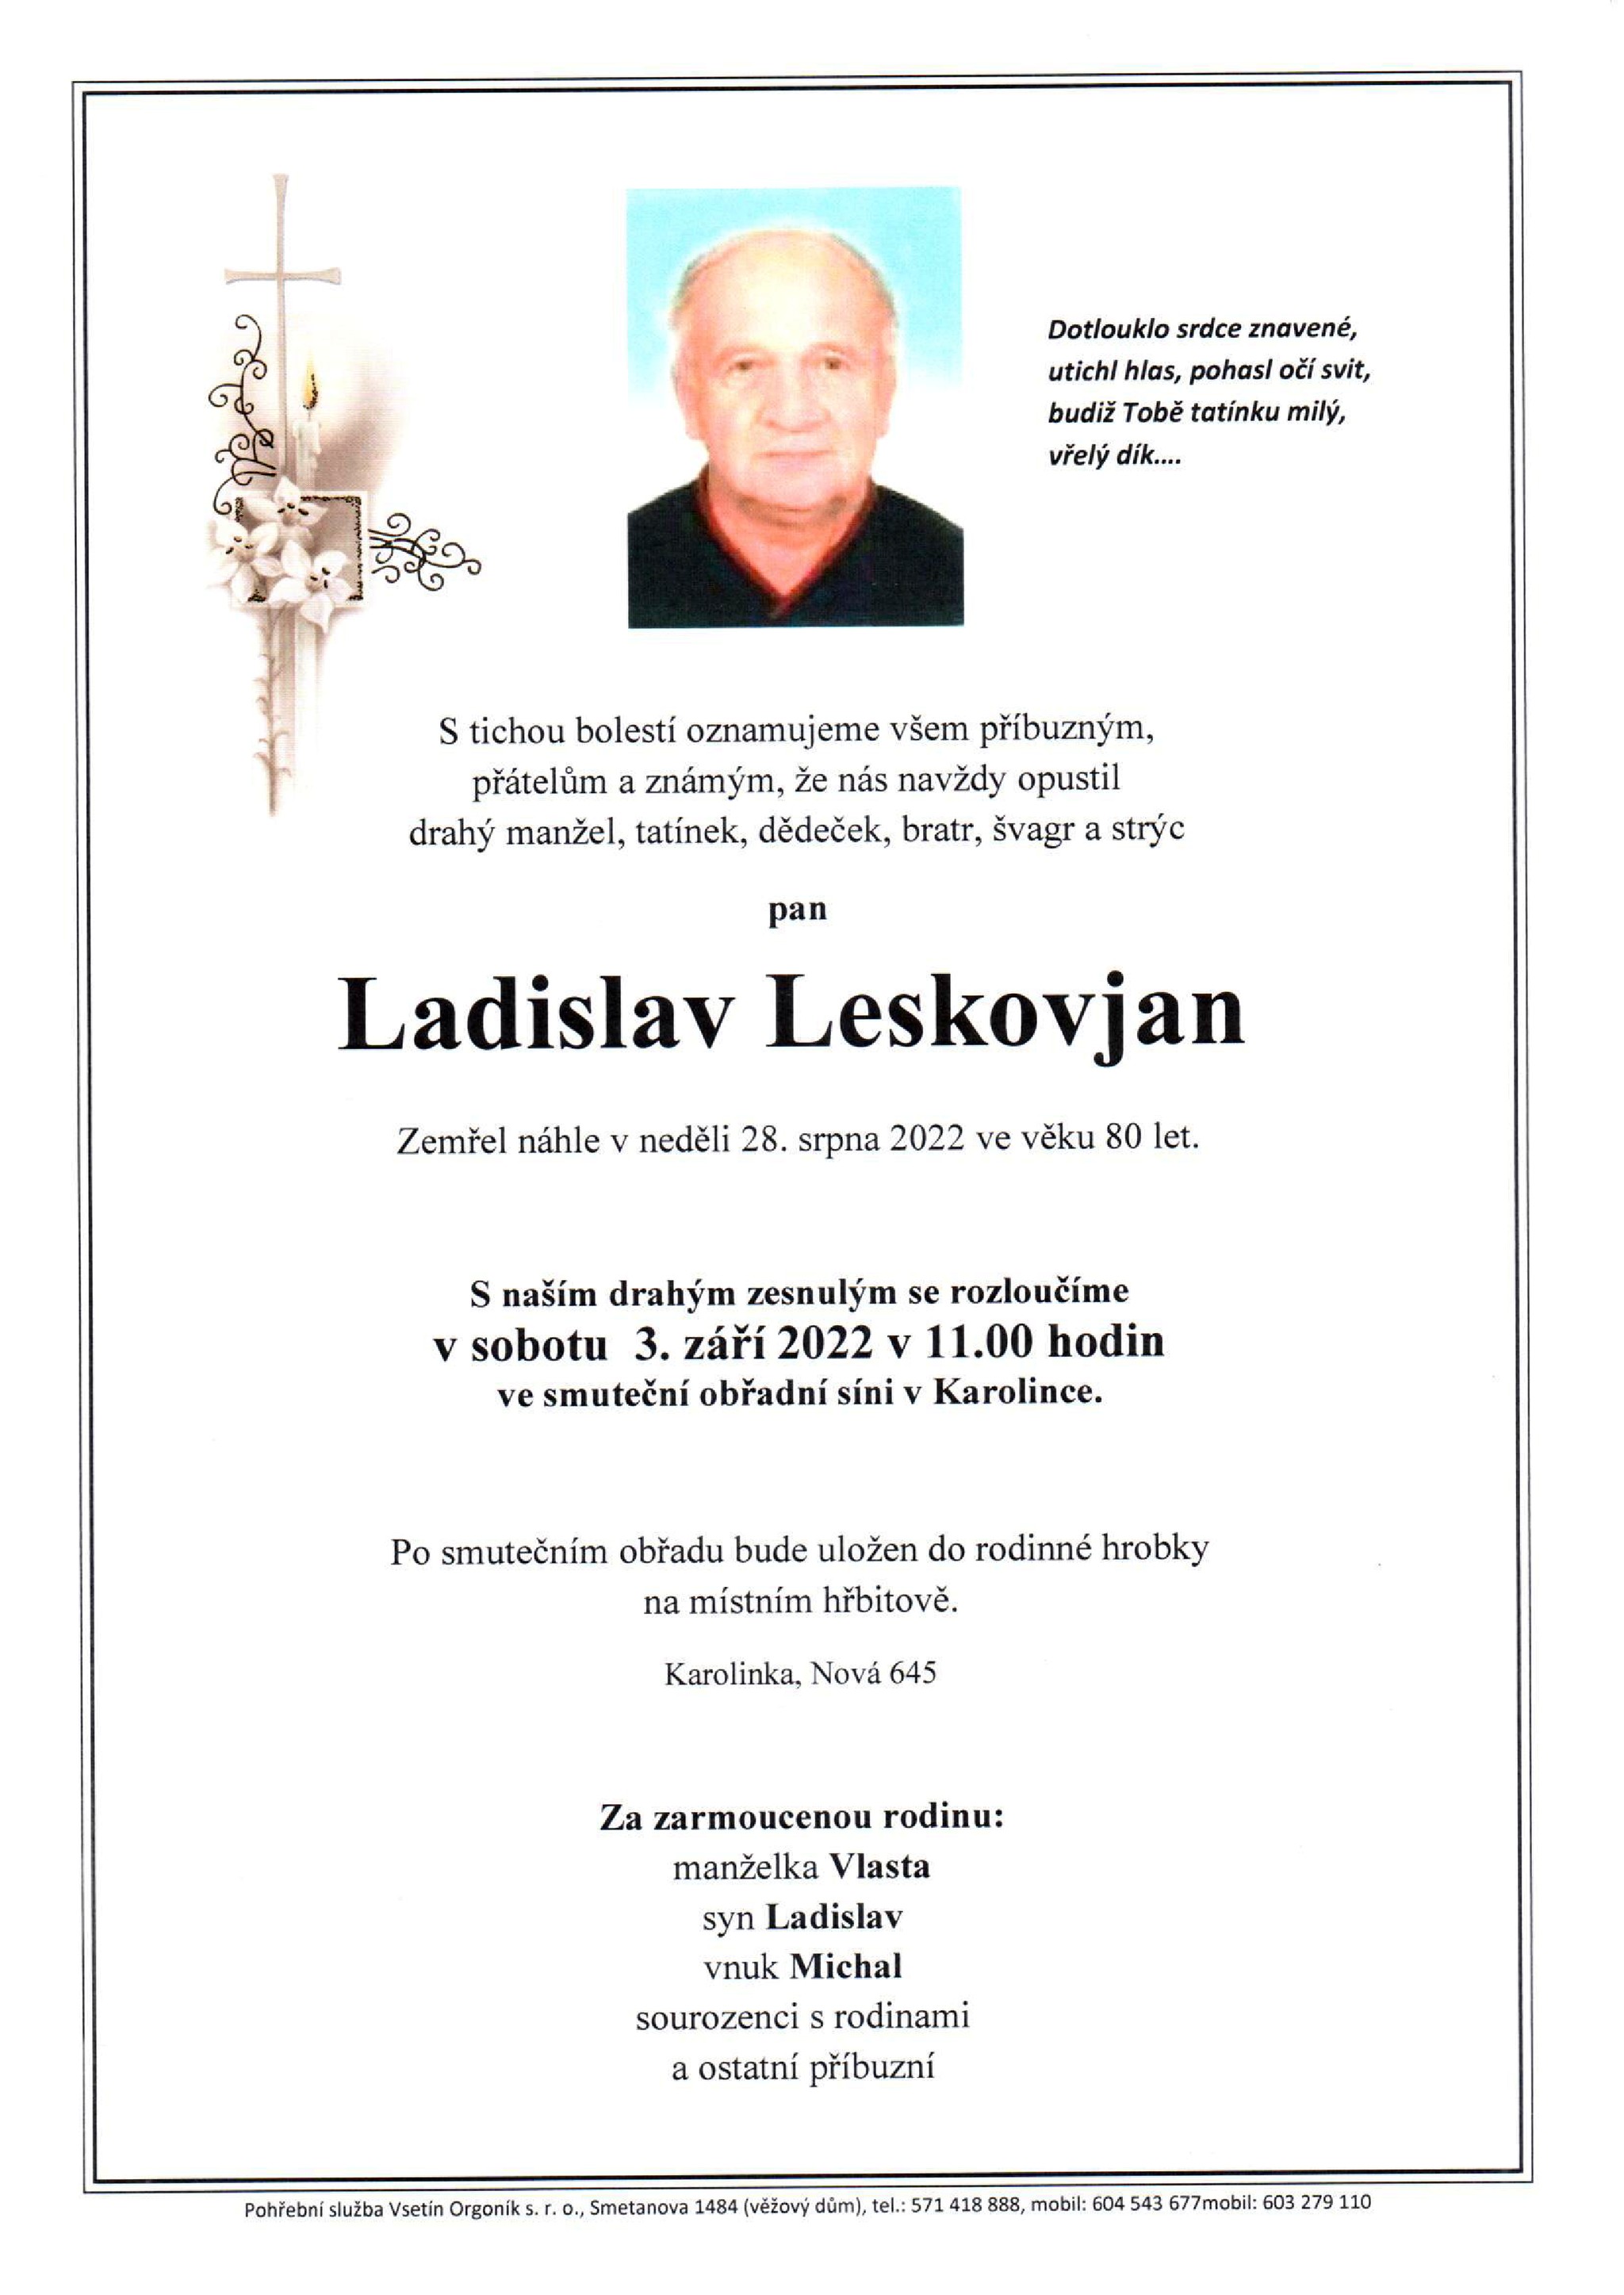 Ladislav Leskovjan